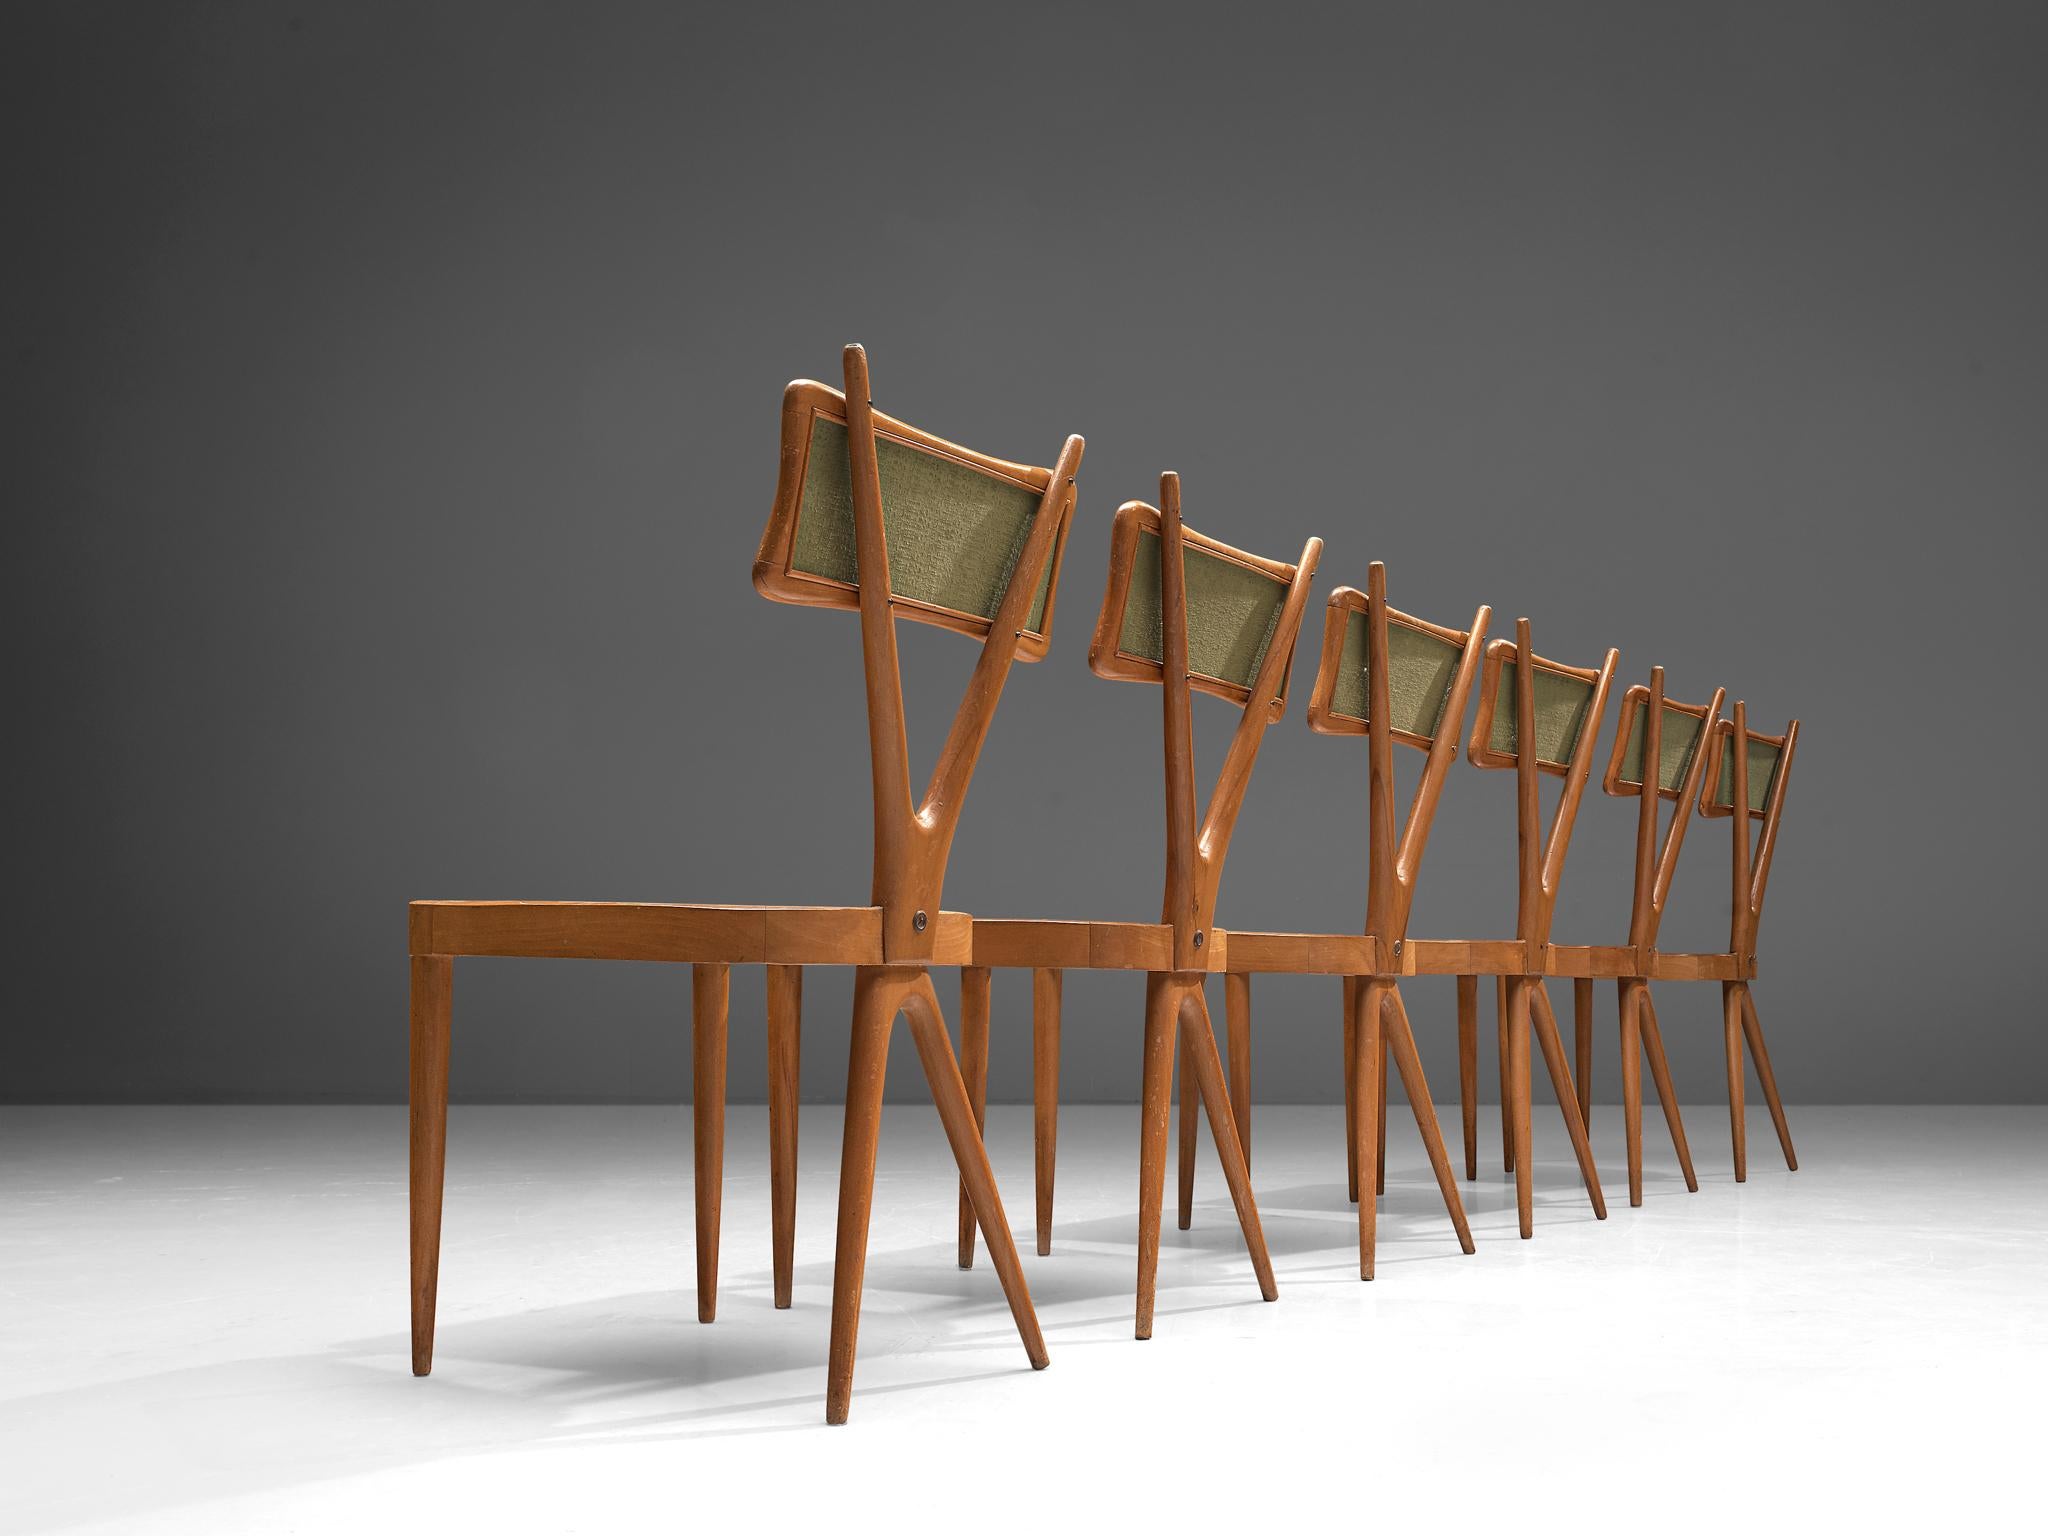 Gianni Beeche, ensemble de six chaises de salle à manger, hêtre, contreplaqué, tissu, Italie, années 1950.

Ces chaises sont magnifiquement construites avec un cadre en forme de X, un détail frappant qui convainc visuellement. Le dossier est sculpté